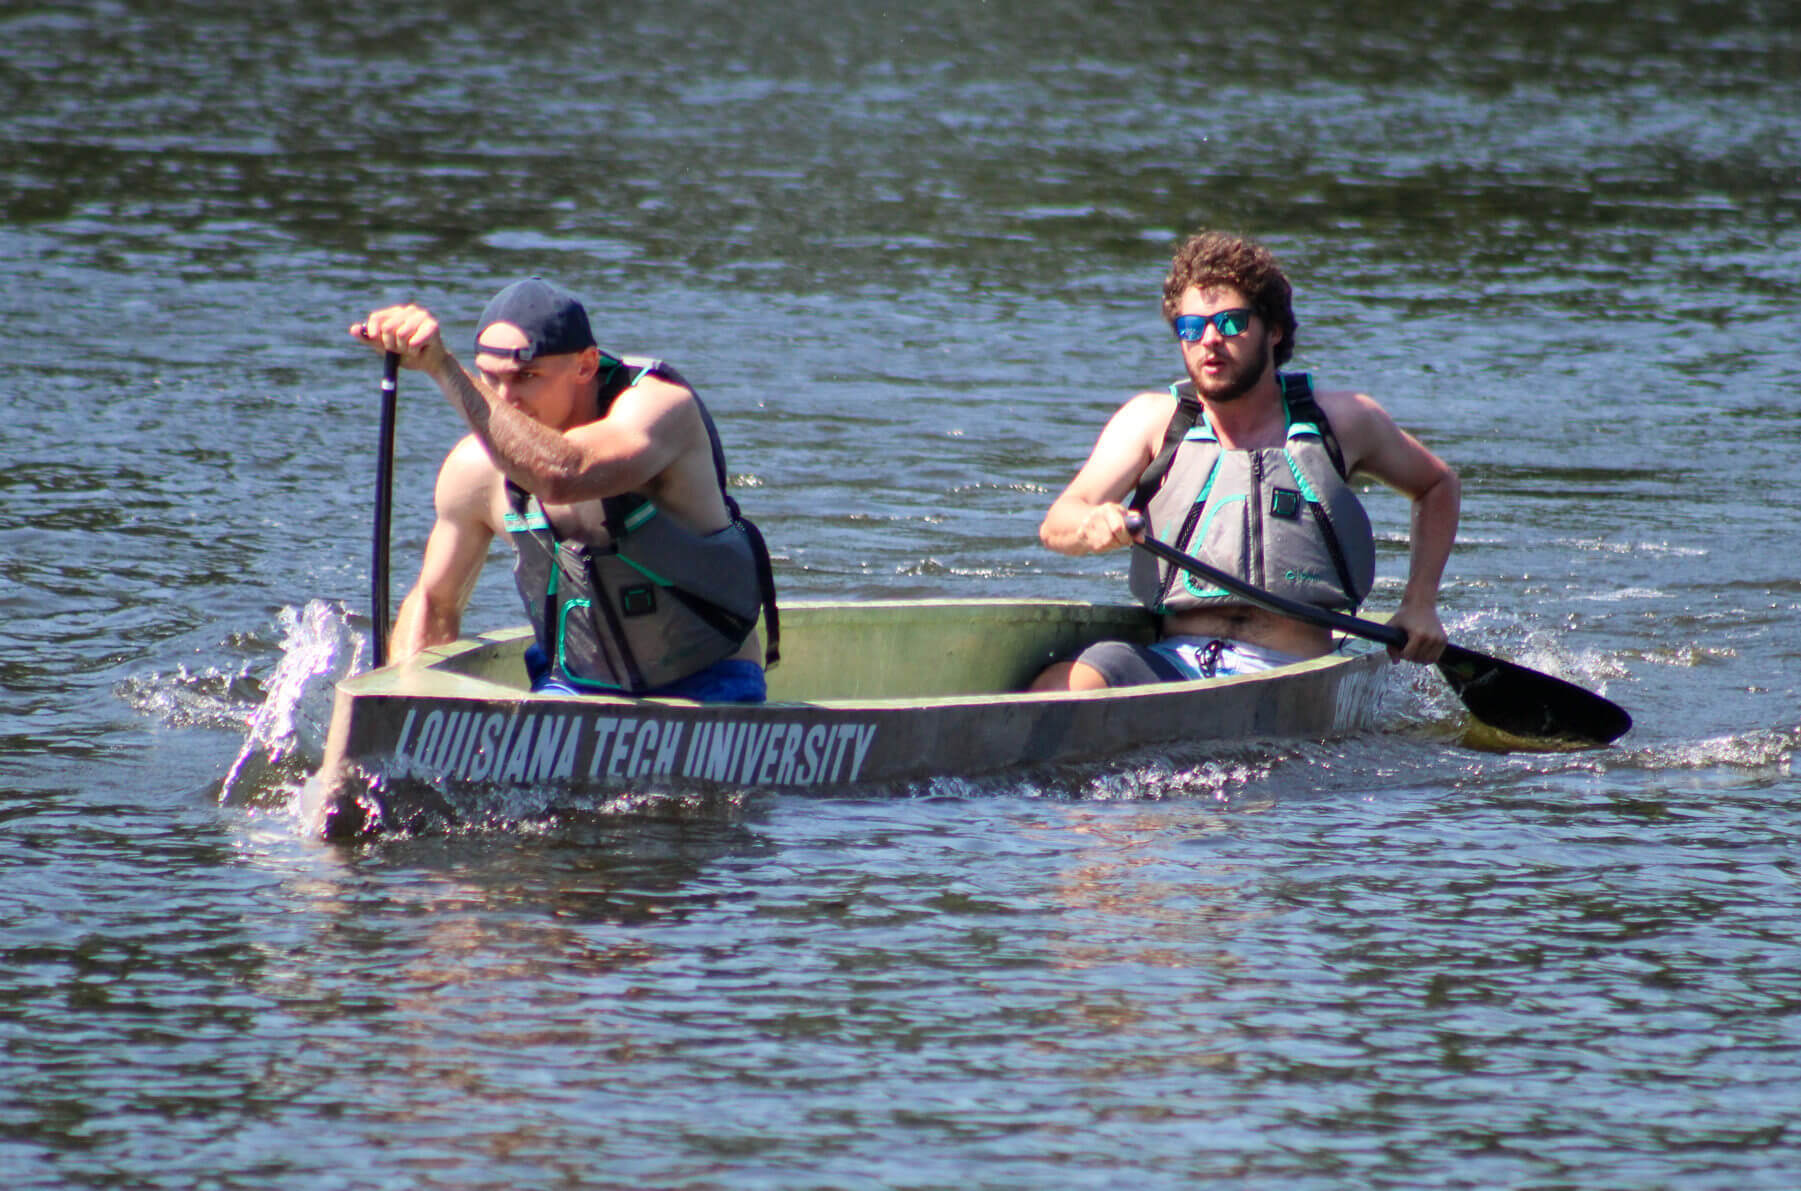 Louisiana Tech University canoe team